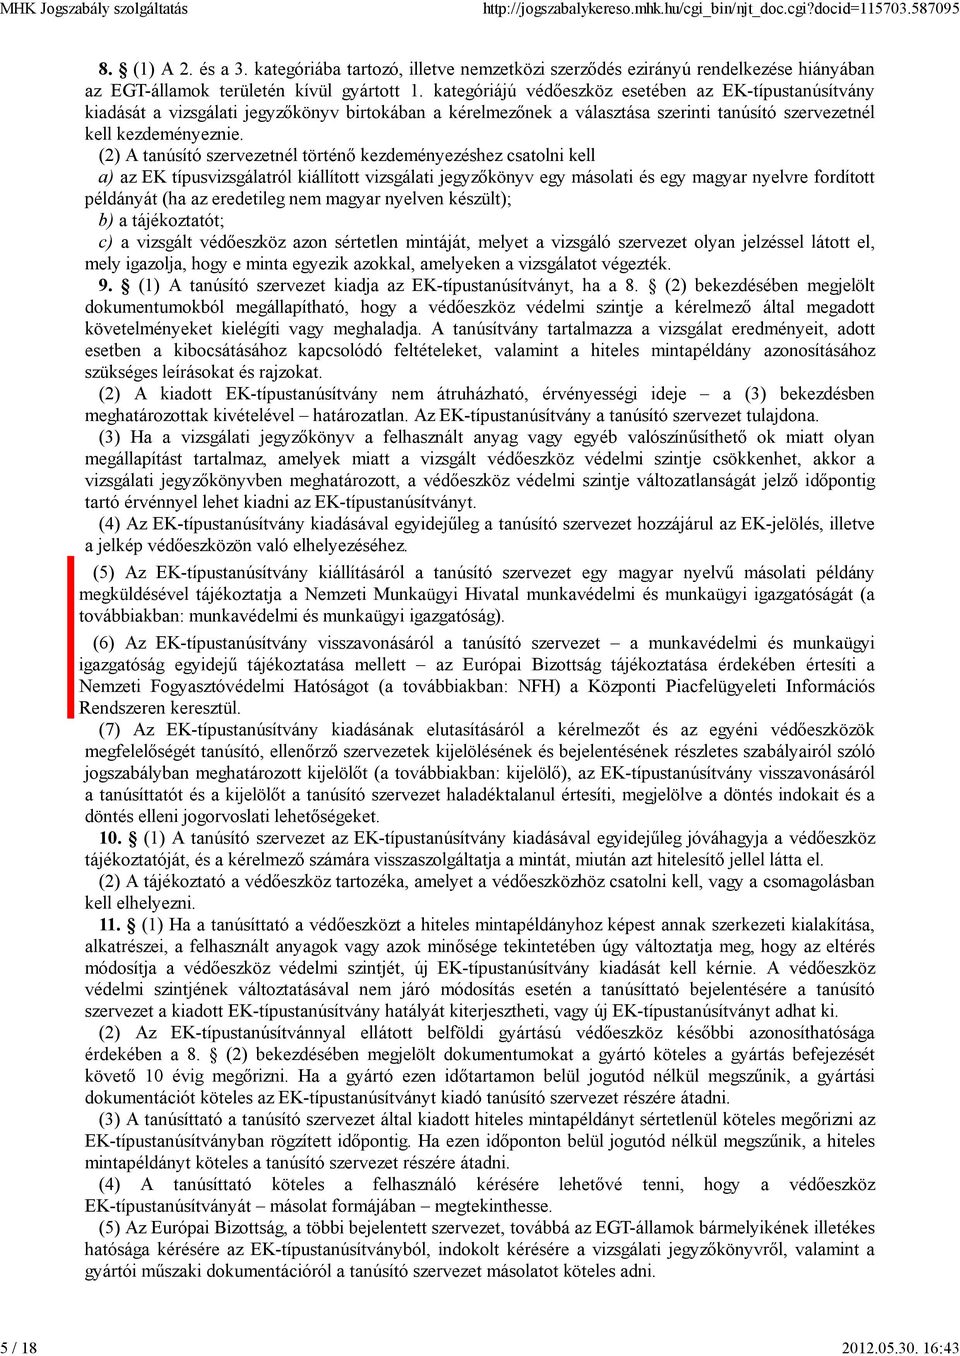 (2) A tanúsító szervezetnél történő kezdeményezéshez csatolni kell a) az EK típusvizsgálatról kiállított vizsgálati jegyzőkönyv egy másolati és egy magyar nyelvre fordított példányát (ha az